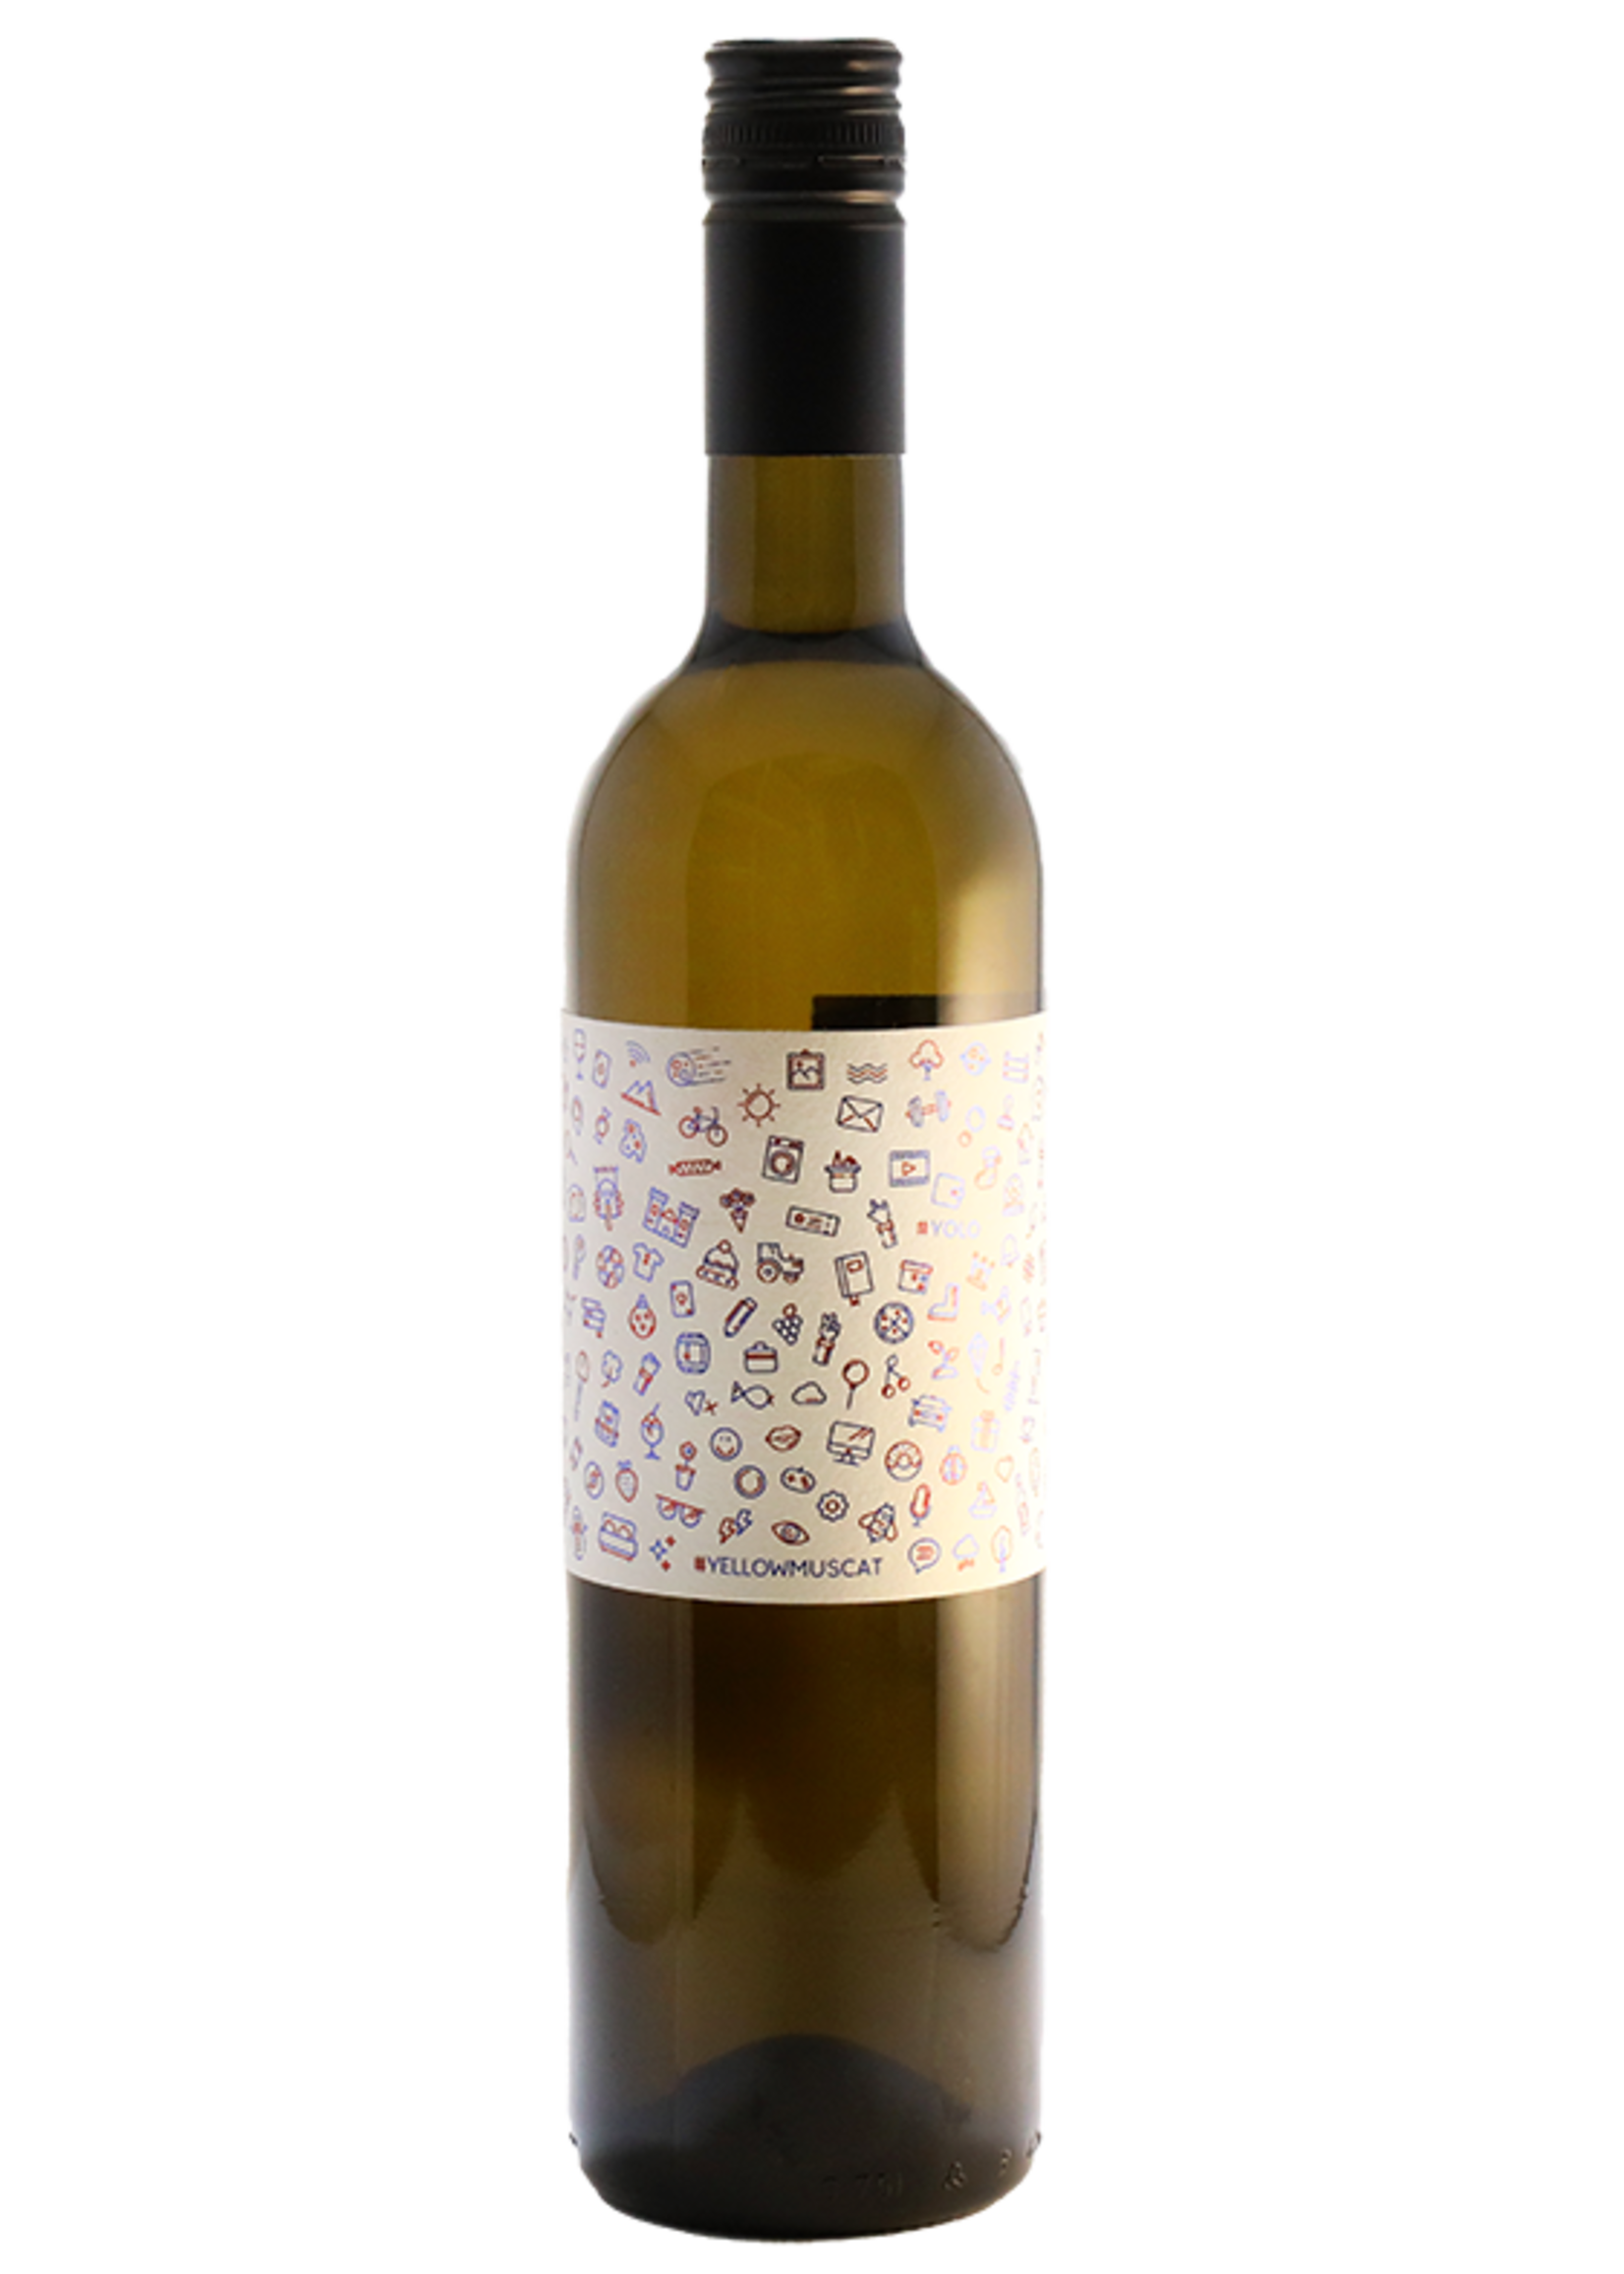 Yellow Muscat 2019 Gonc Winery